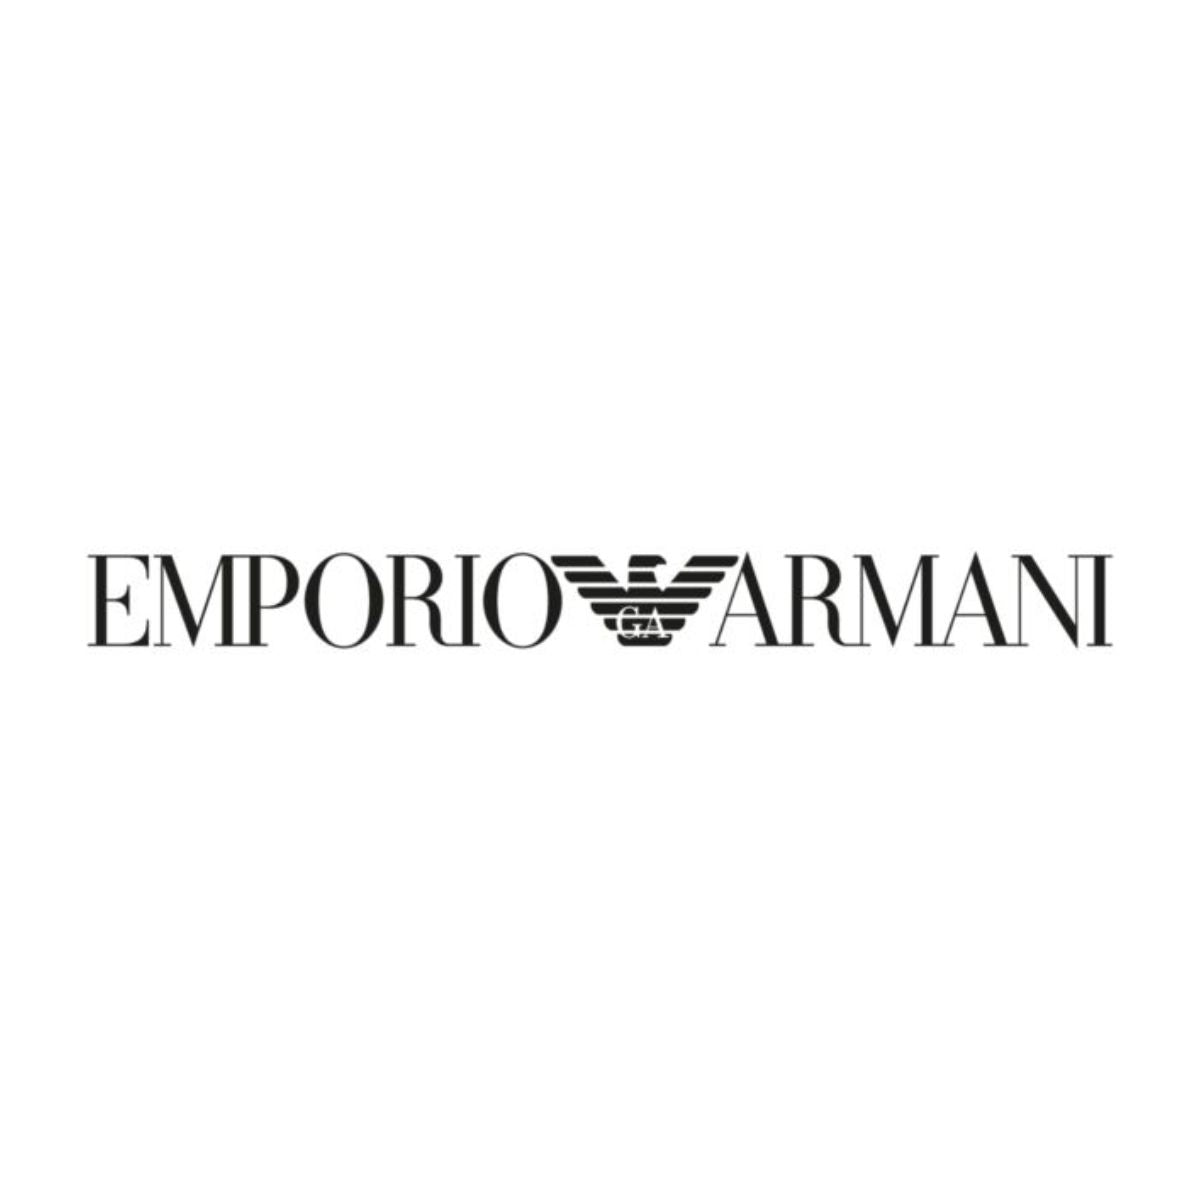 "Emporio Armani Premium eyewear brands sunglasses & optical frames and lenses at optorium"